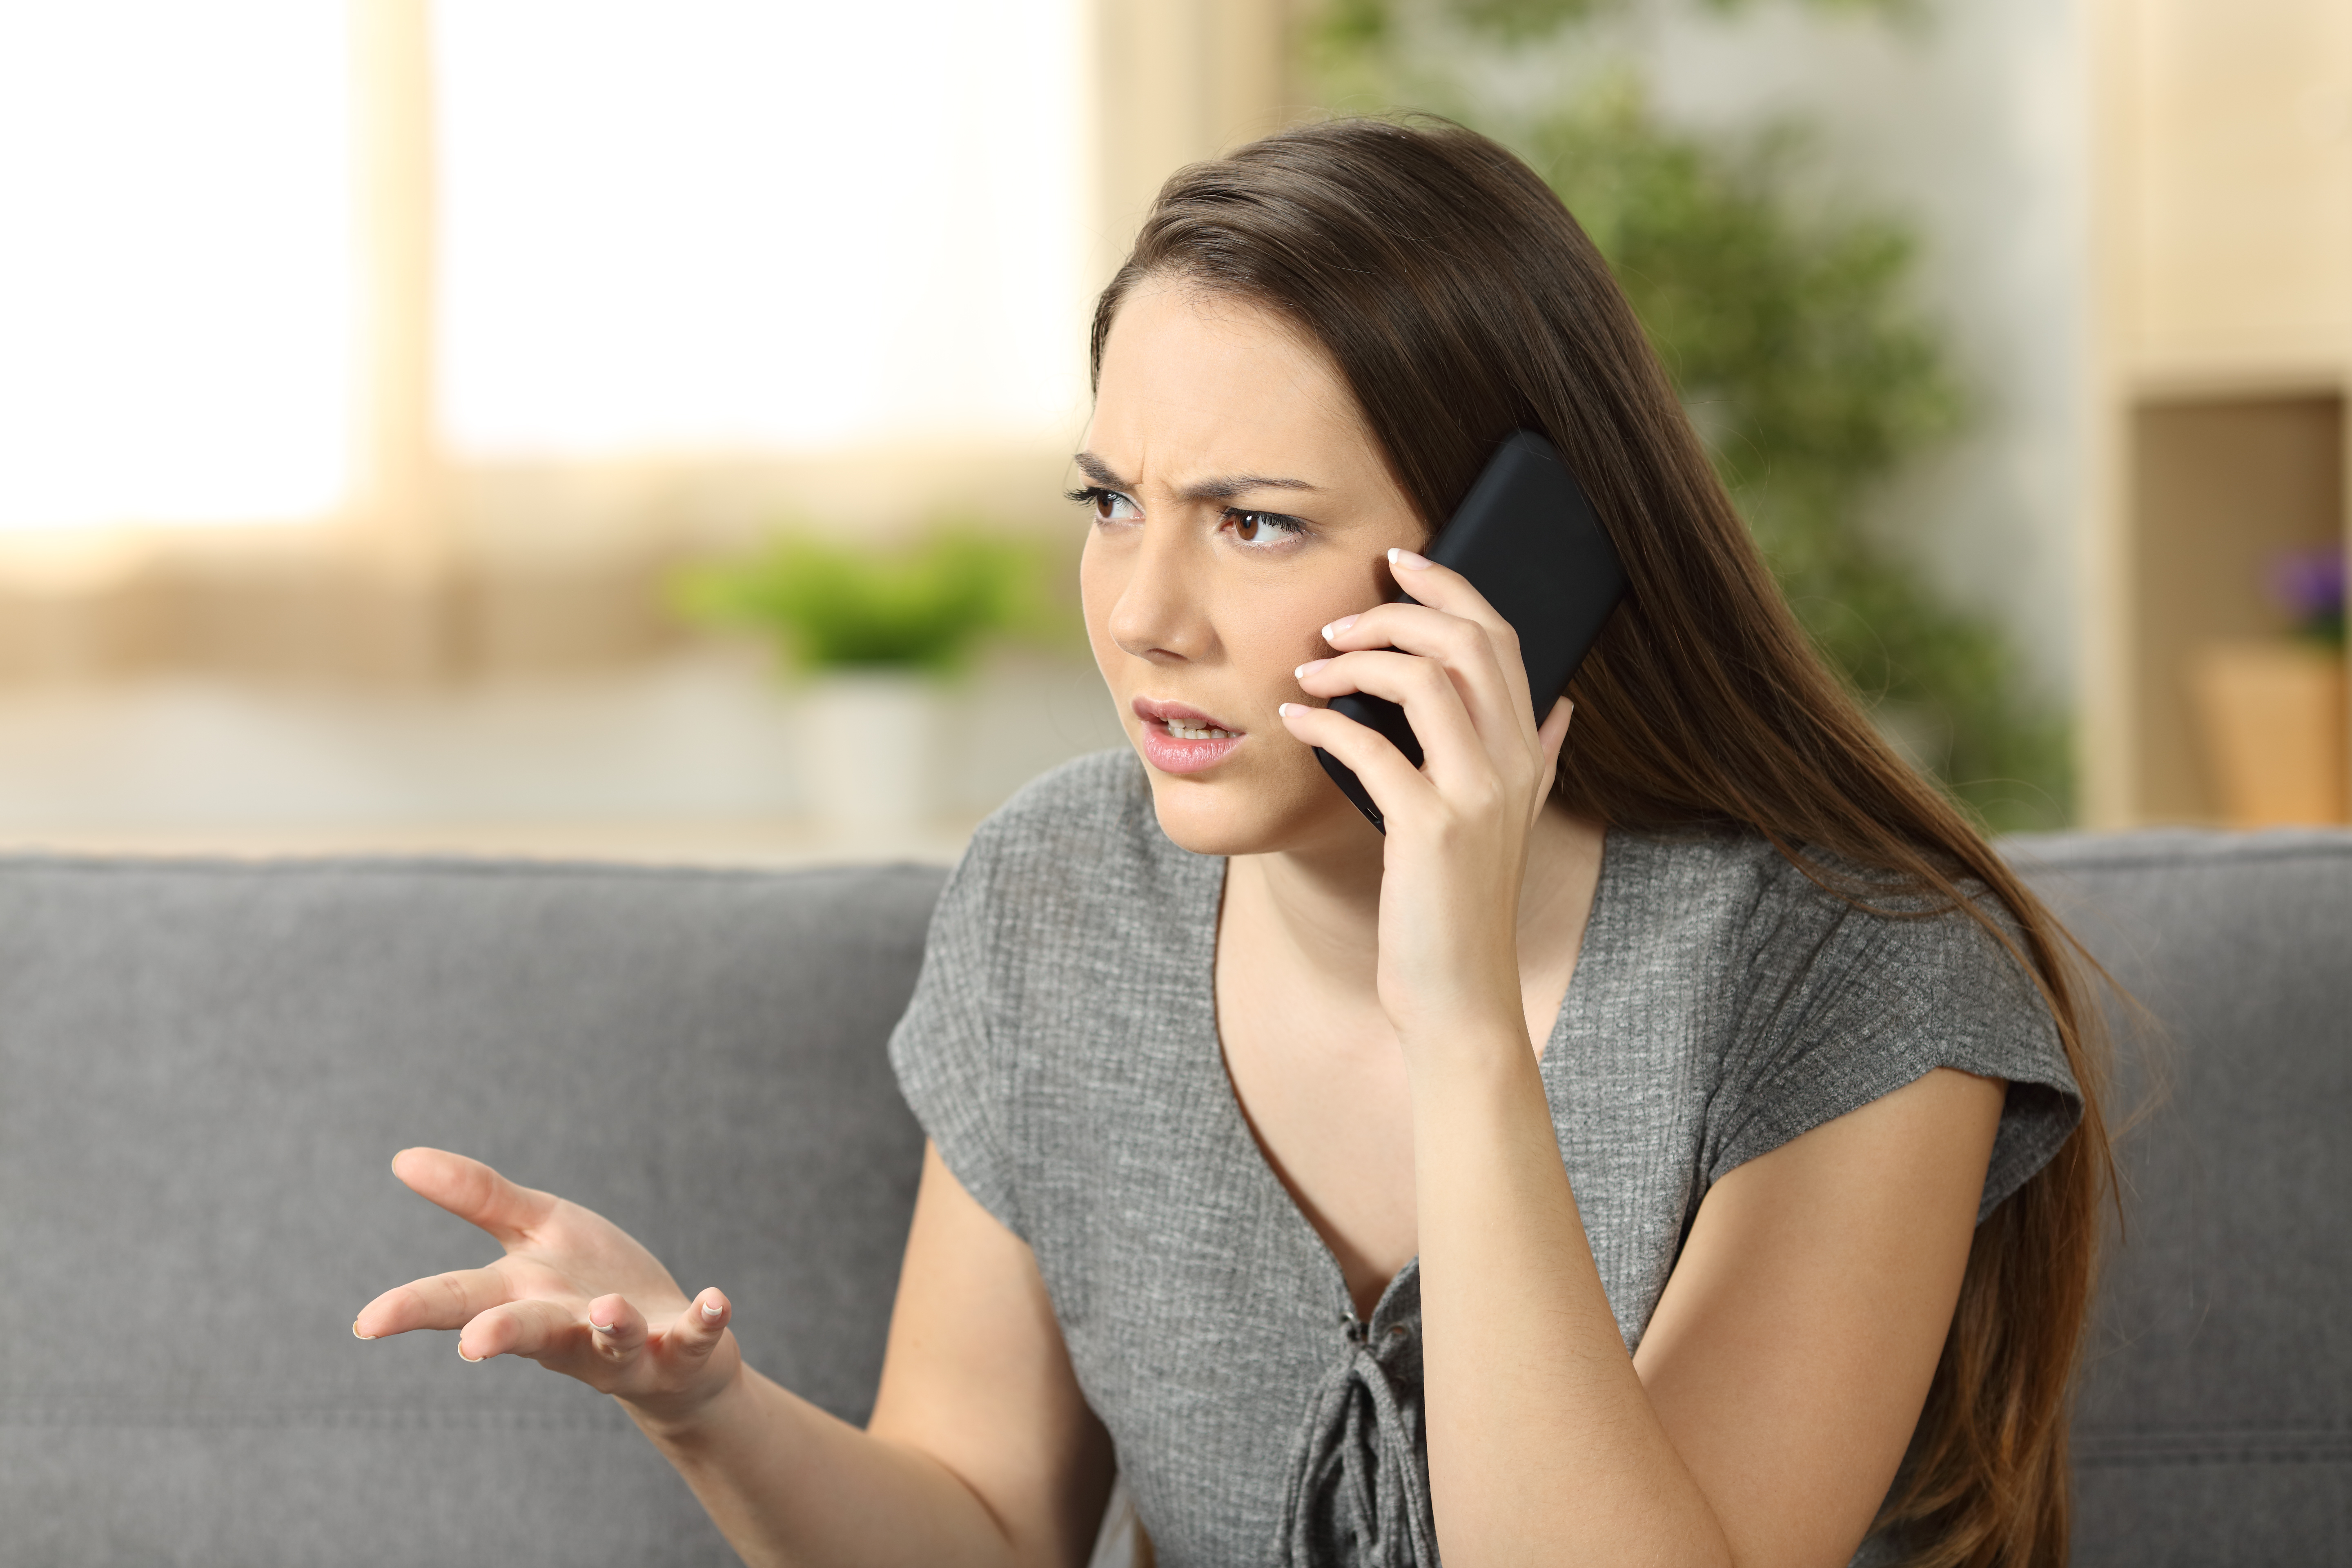 Une femme en train de se disputer lors d'un appel téléphonique | Source : Shutterstock